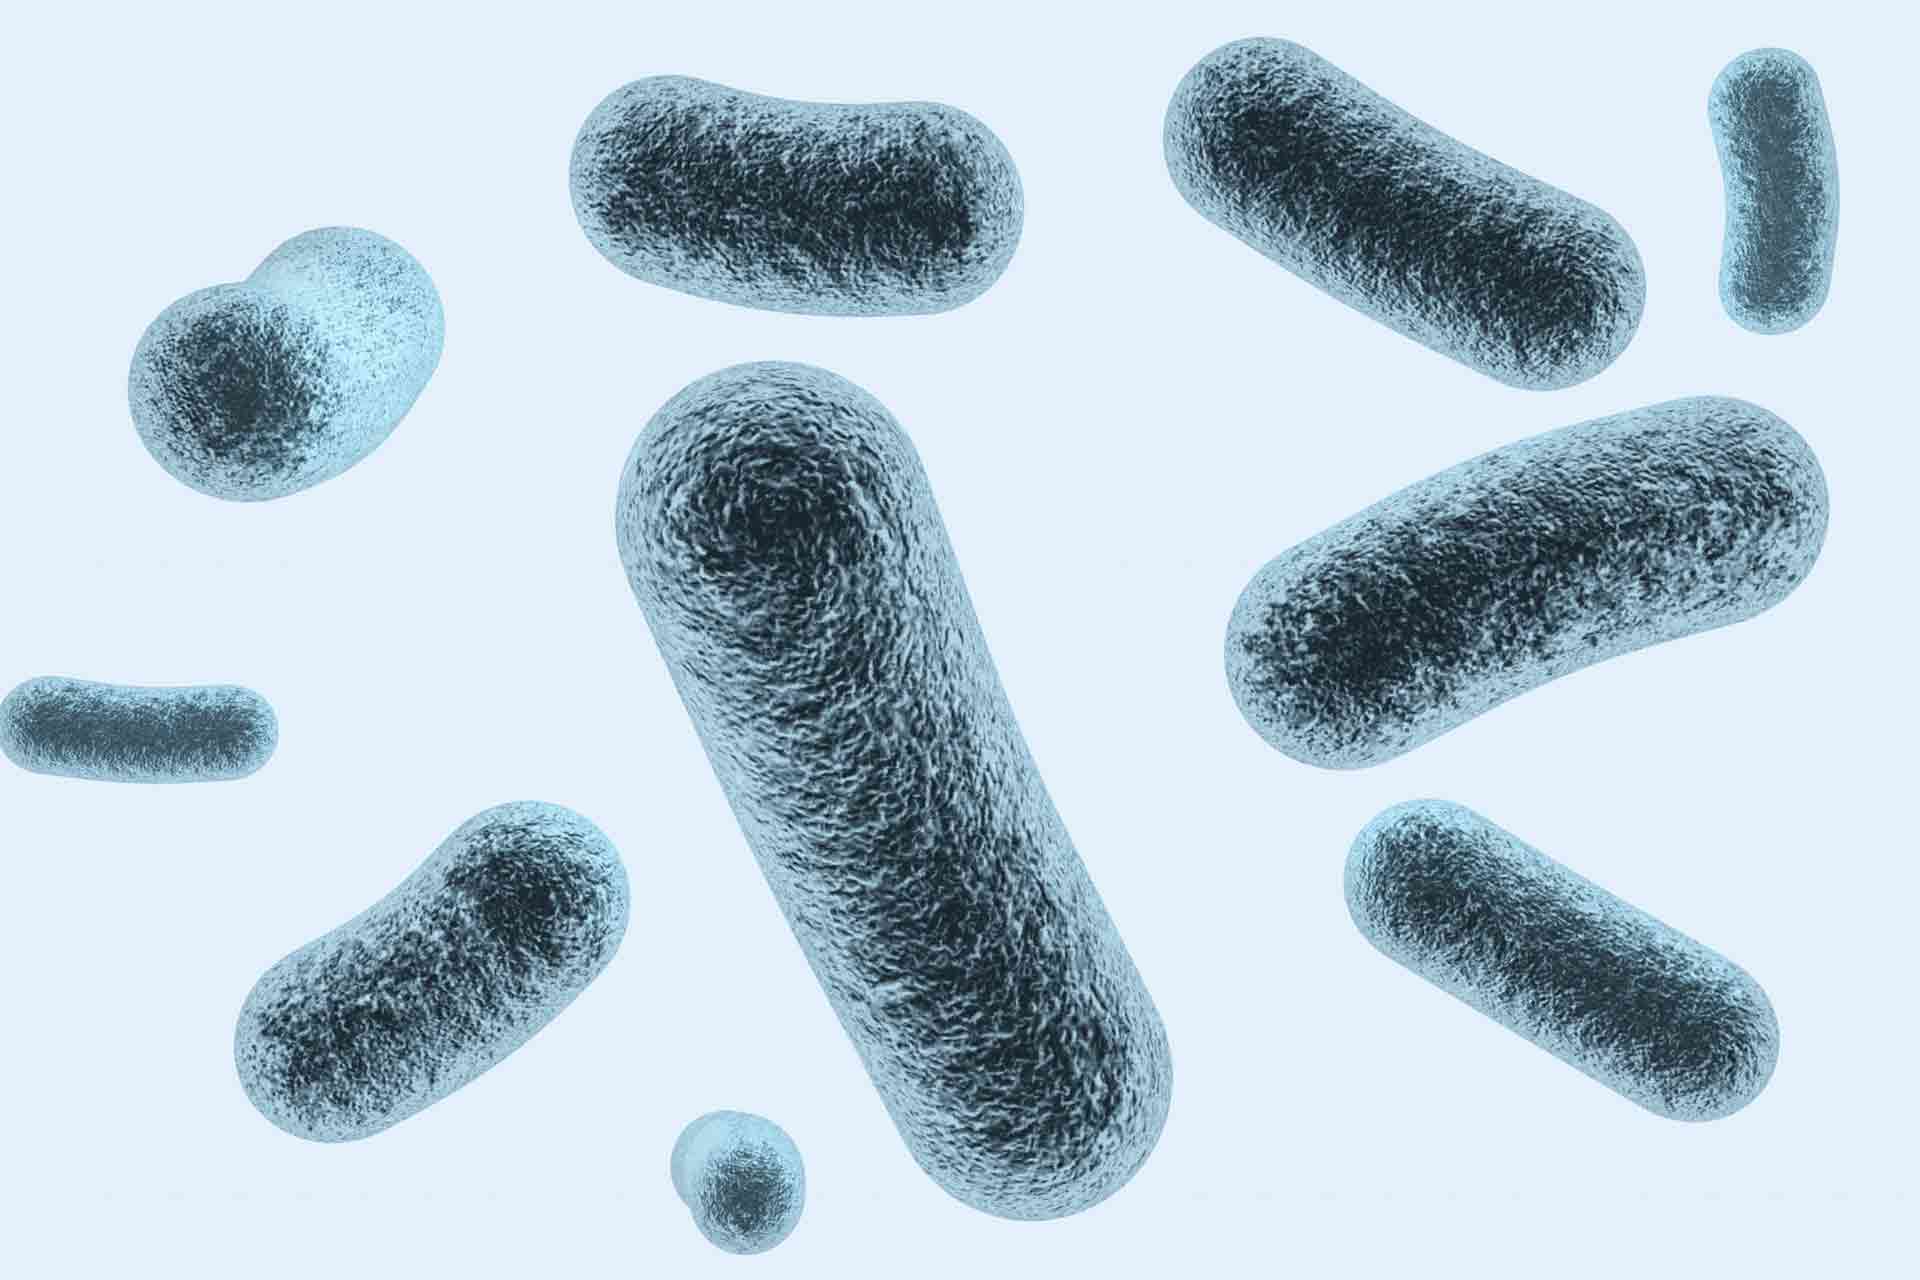 細菌のイメージ